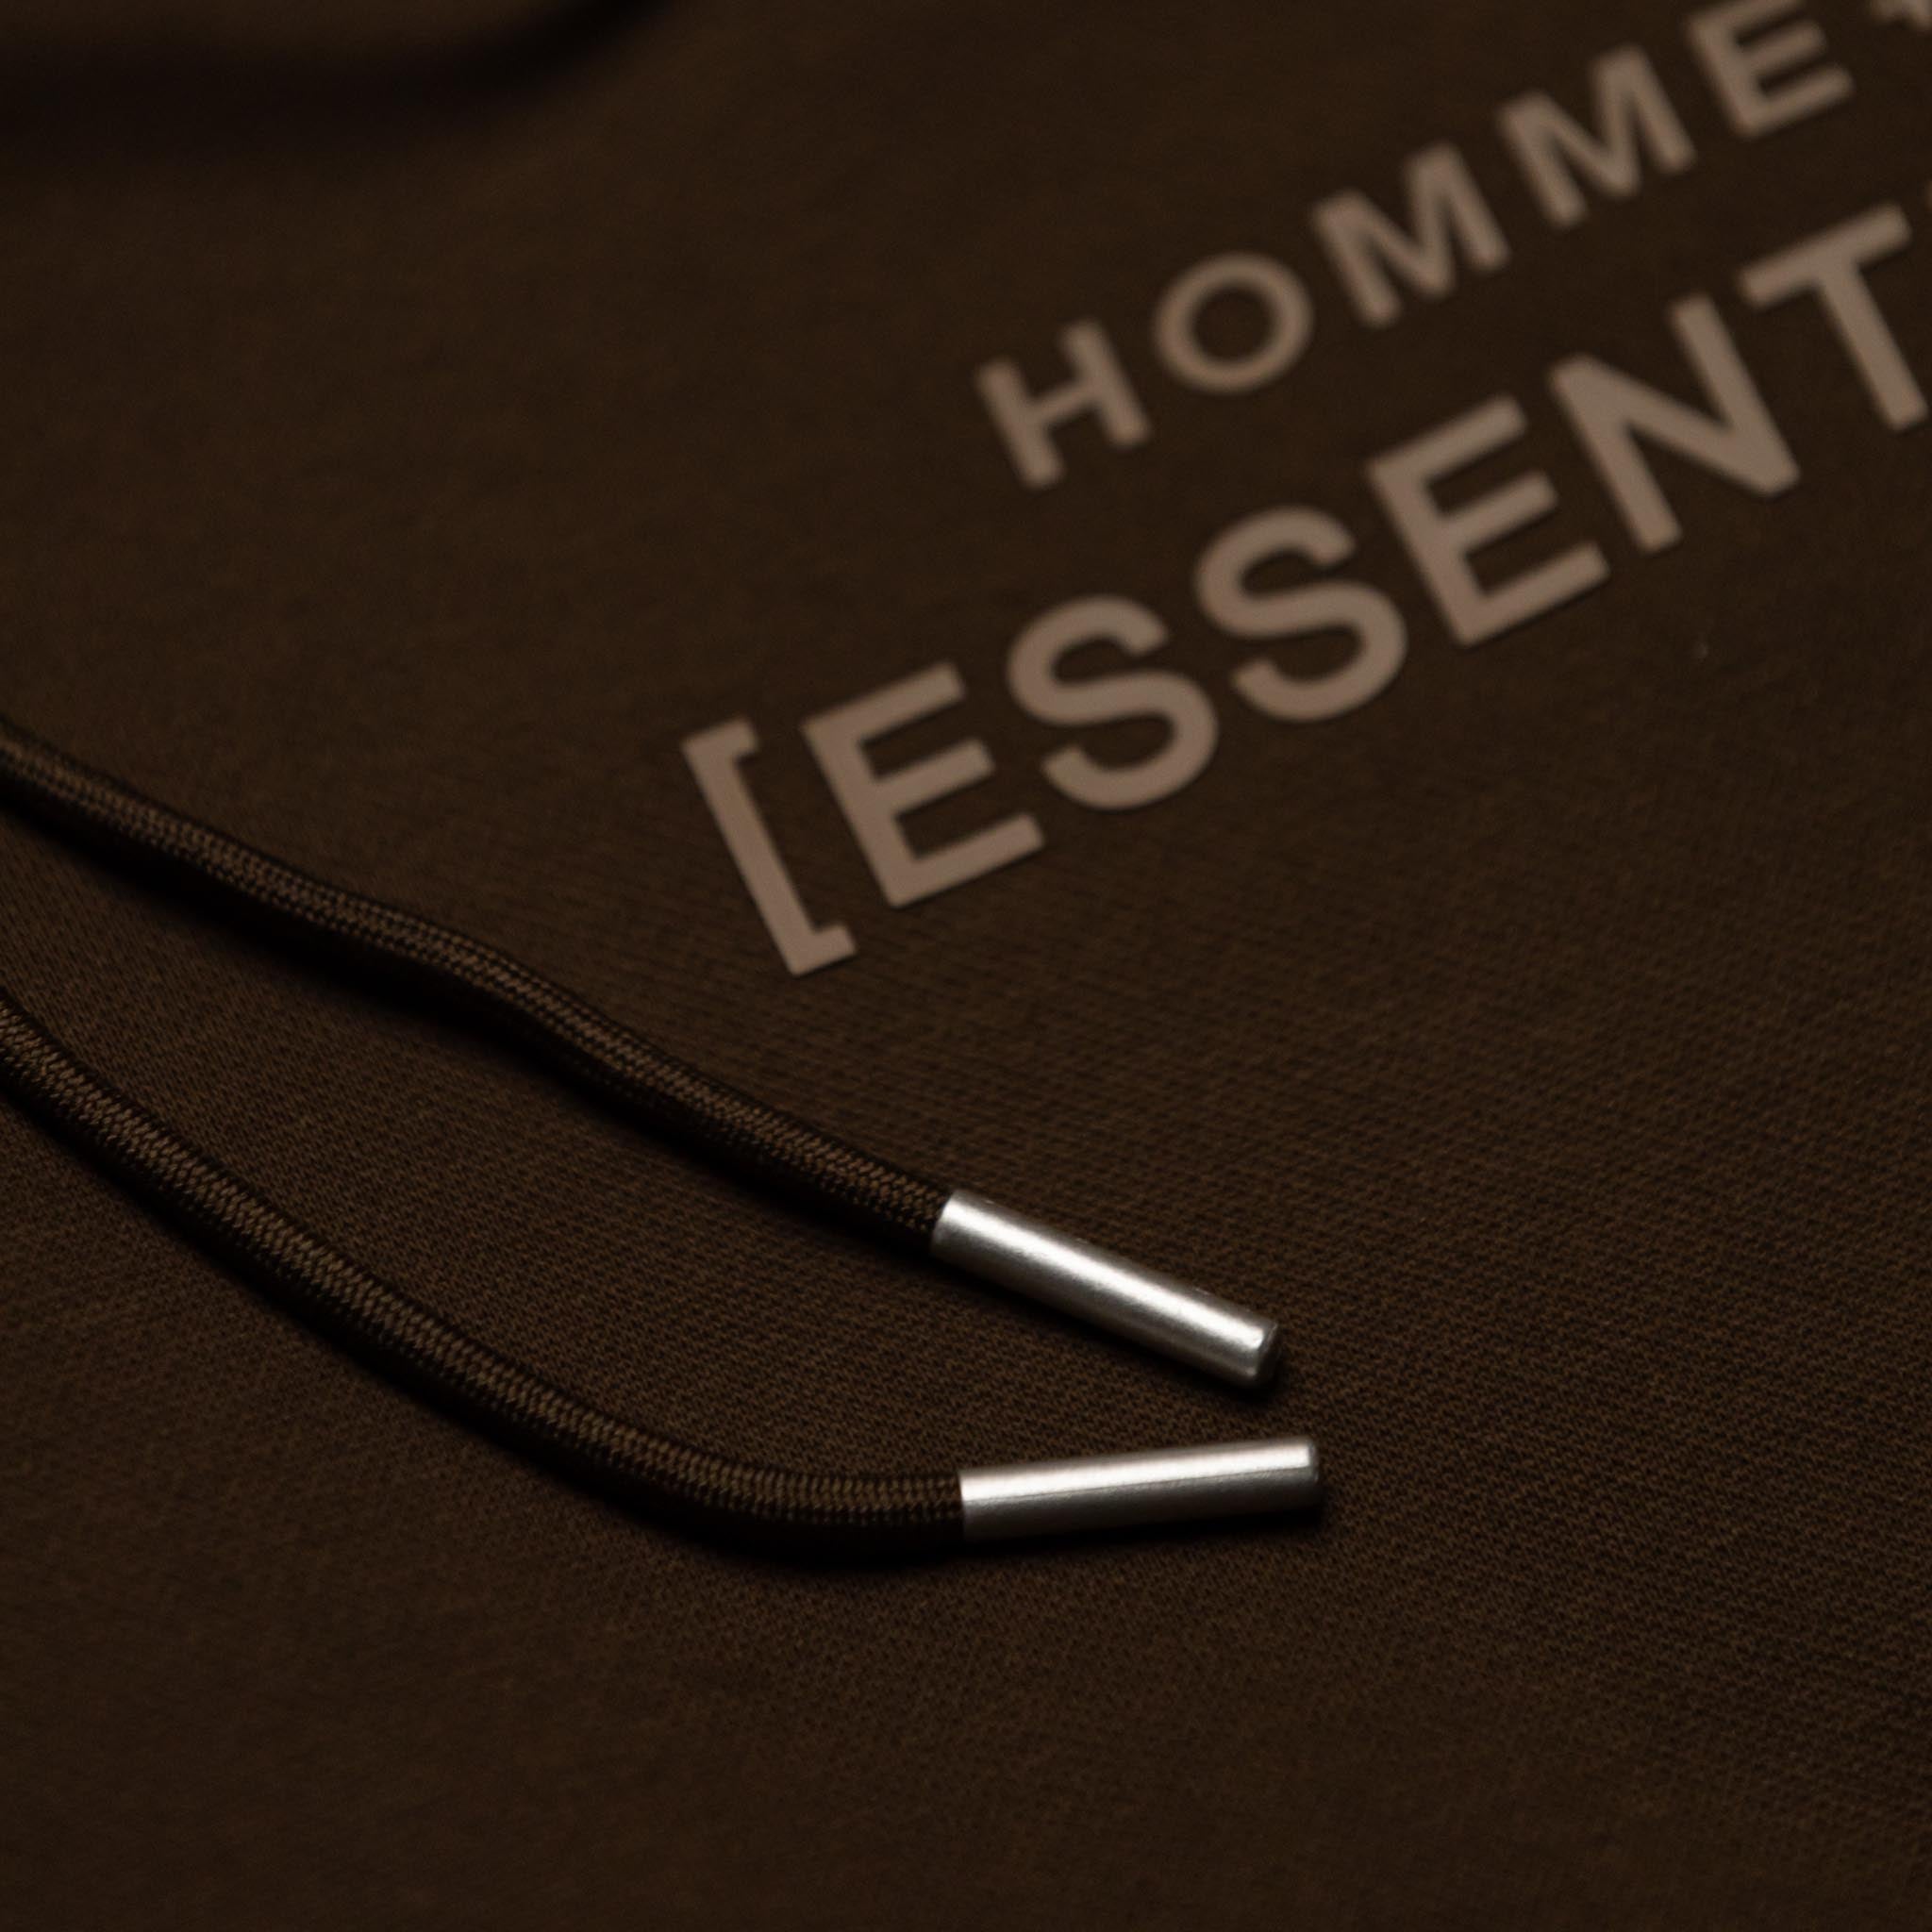 HOMME+ Essential Hoodie Mocha